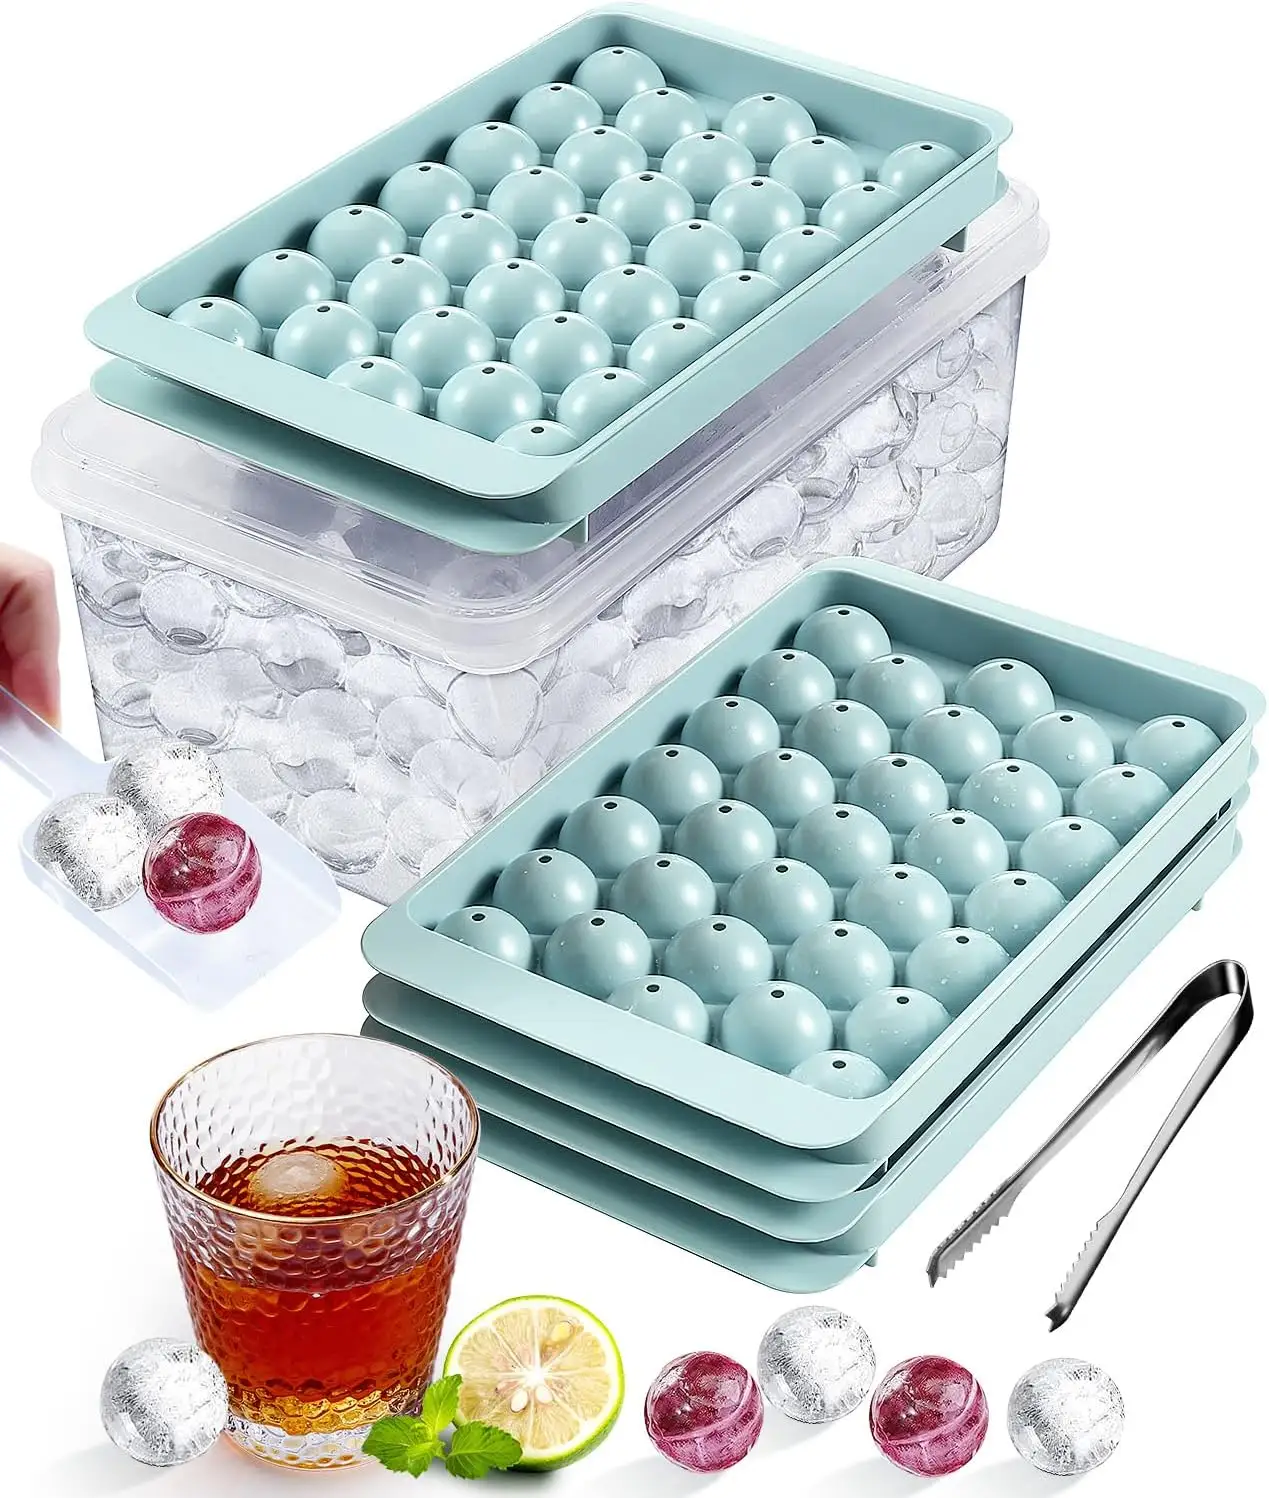 Yeni özel silieasy easy yayın kokteyl yuvarlak küçük daire buz küpü tepsi buz topu makinesi kalıp küre buz kalıbı konteyner ile